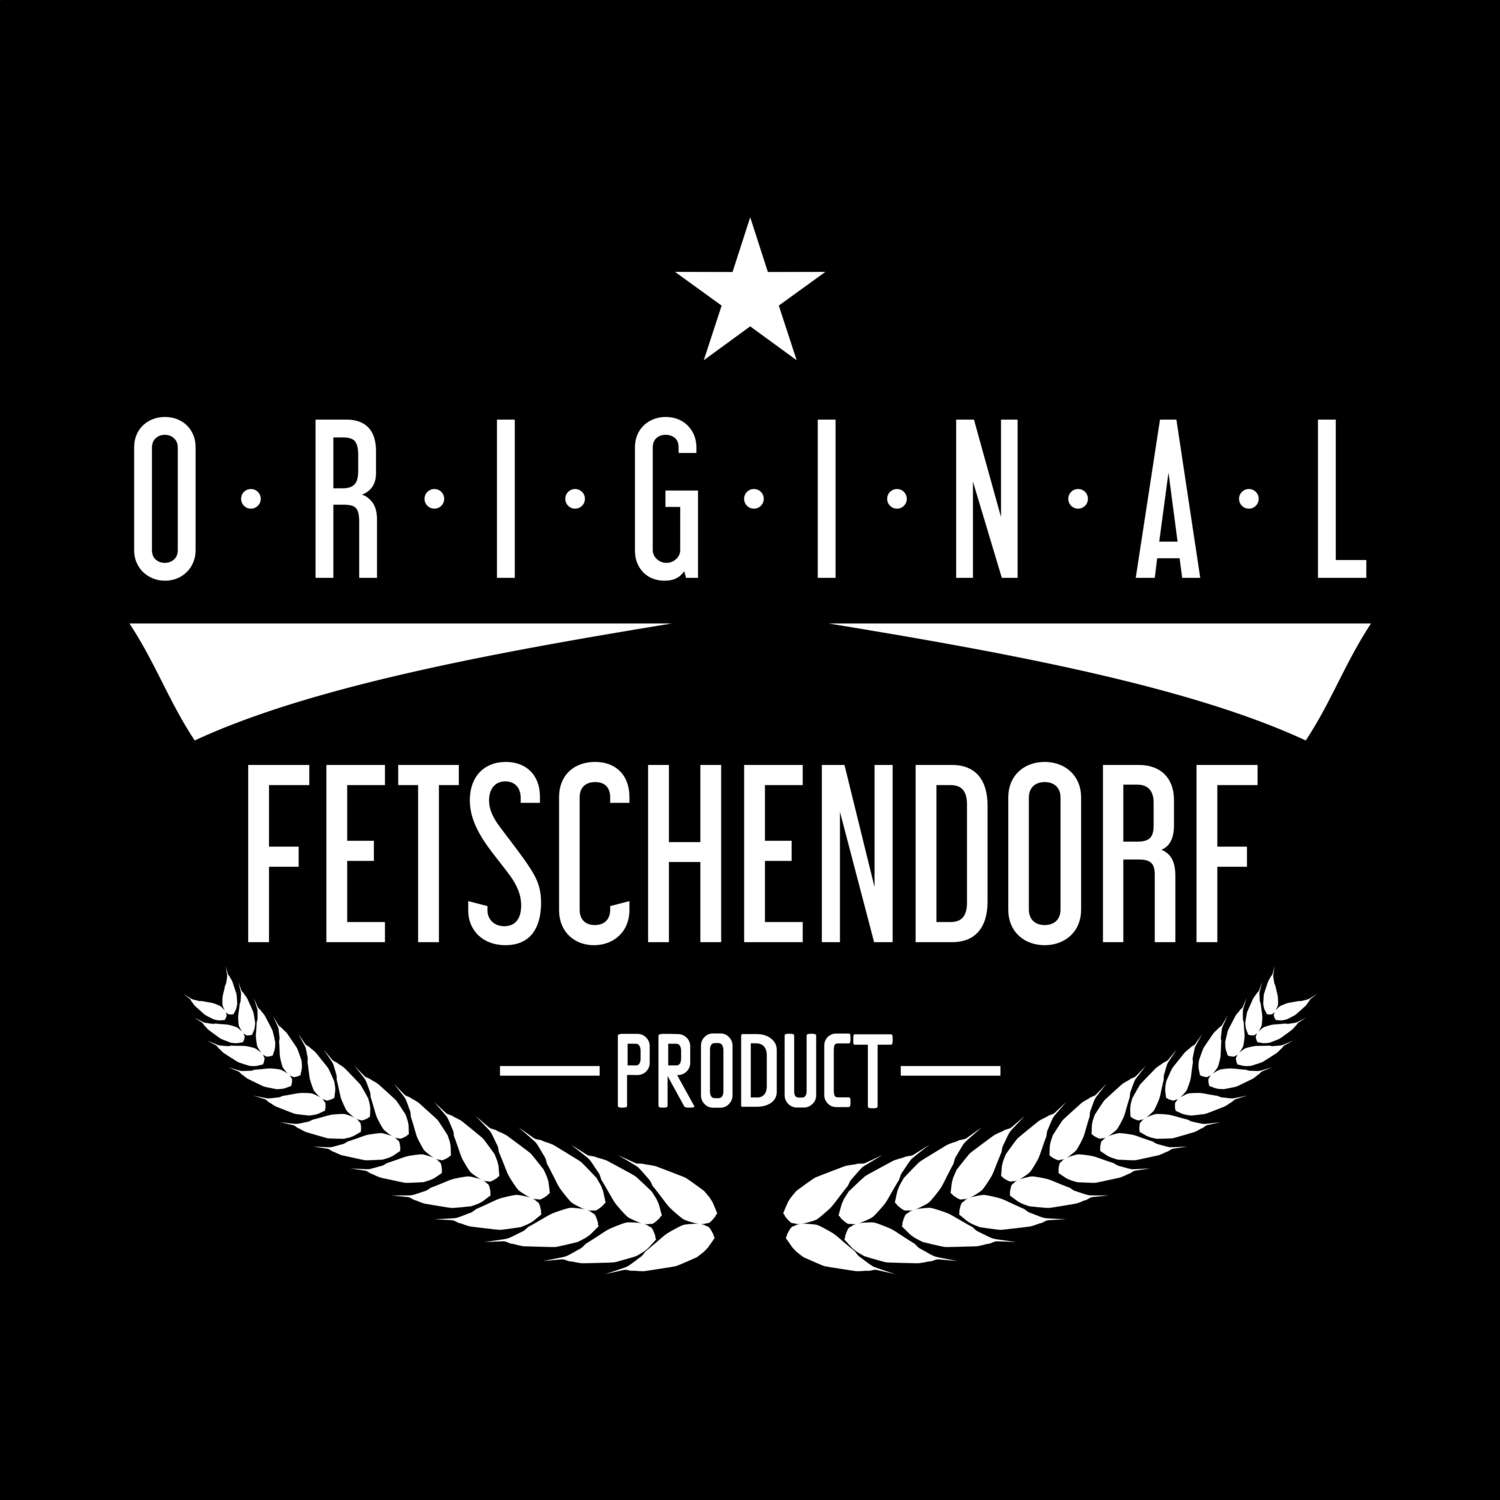 Fetschendorf T-Shirt »Original Product«